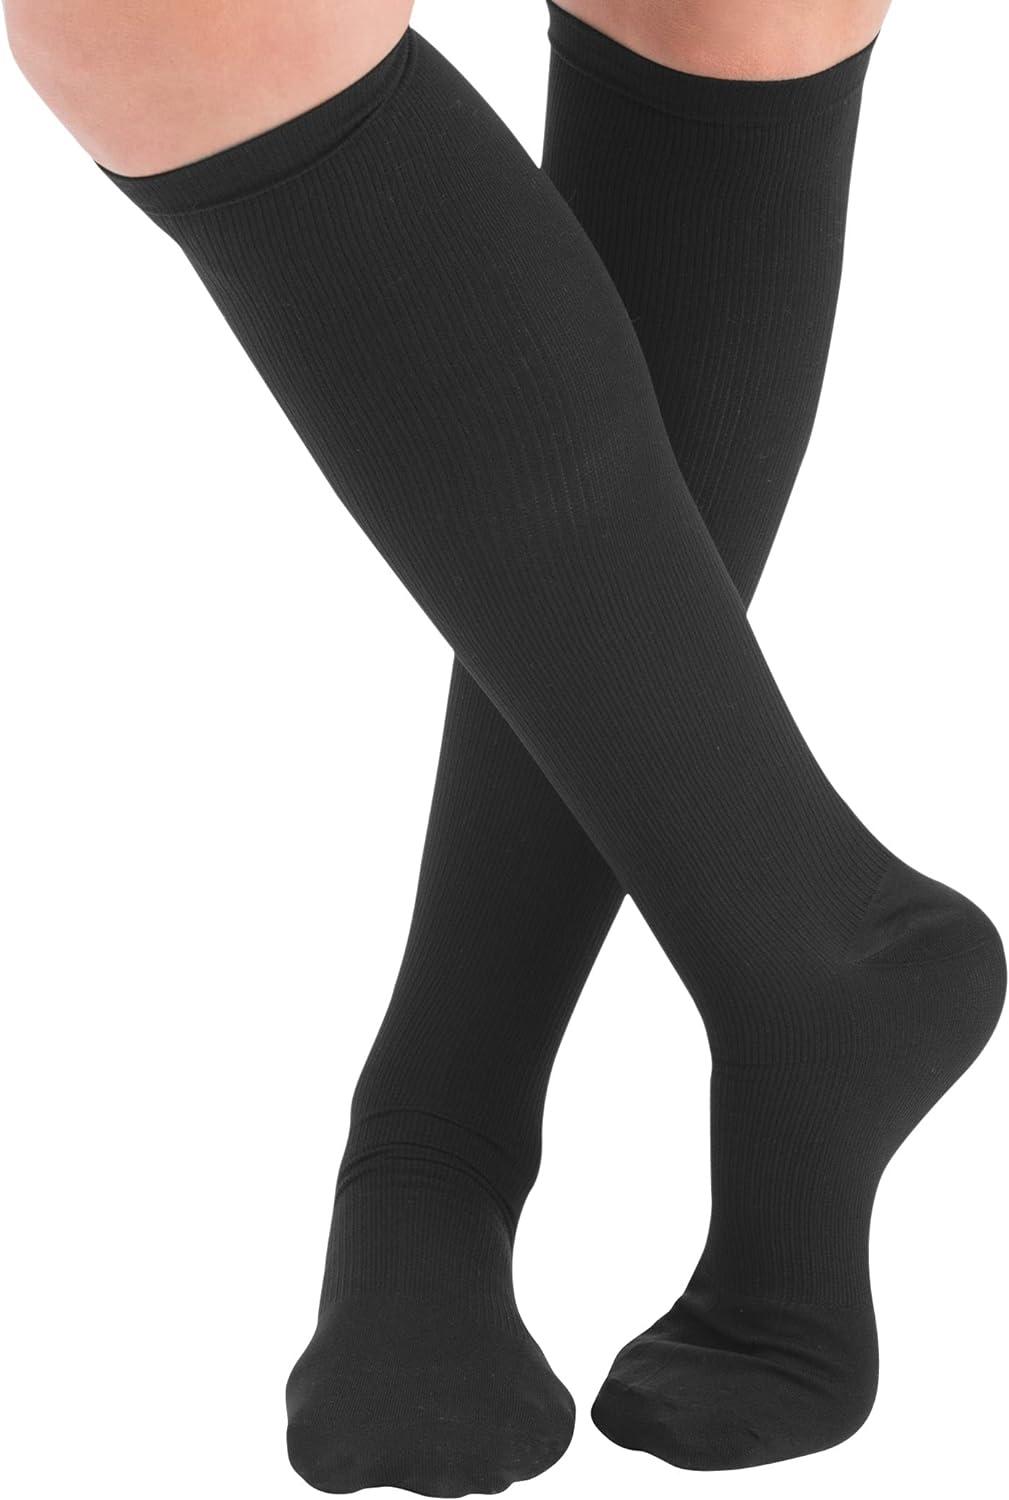 Buy Black Patterned Trouser Socks 3 Pack 4-8 | Socks | Argos